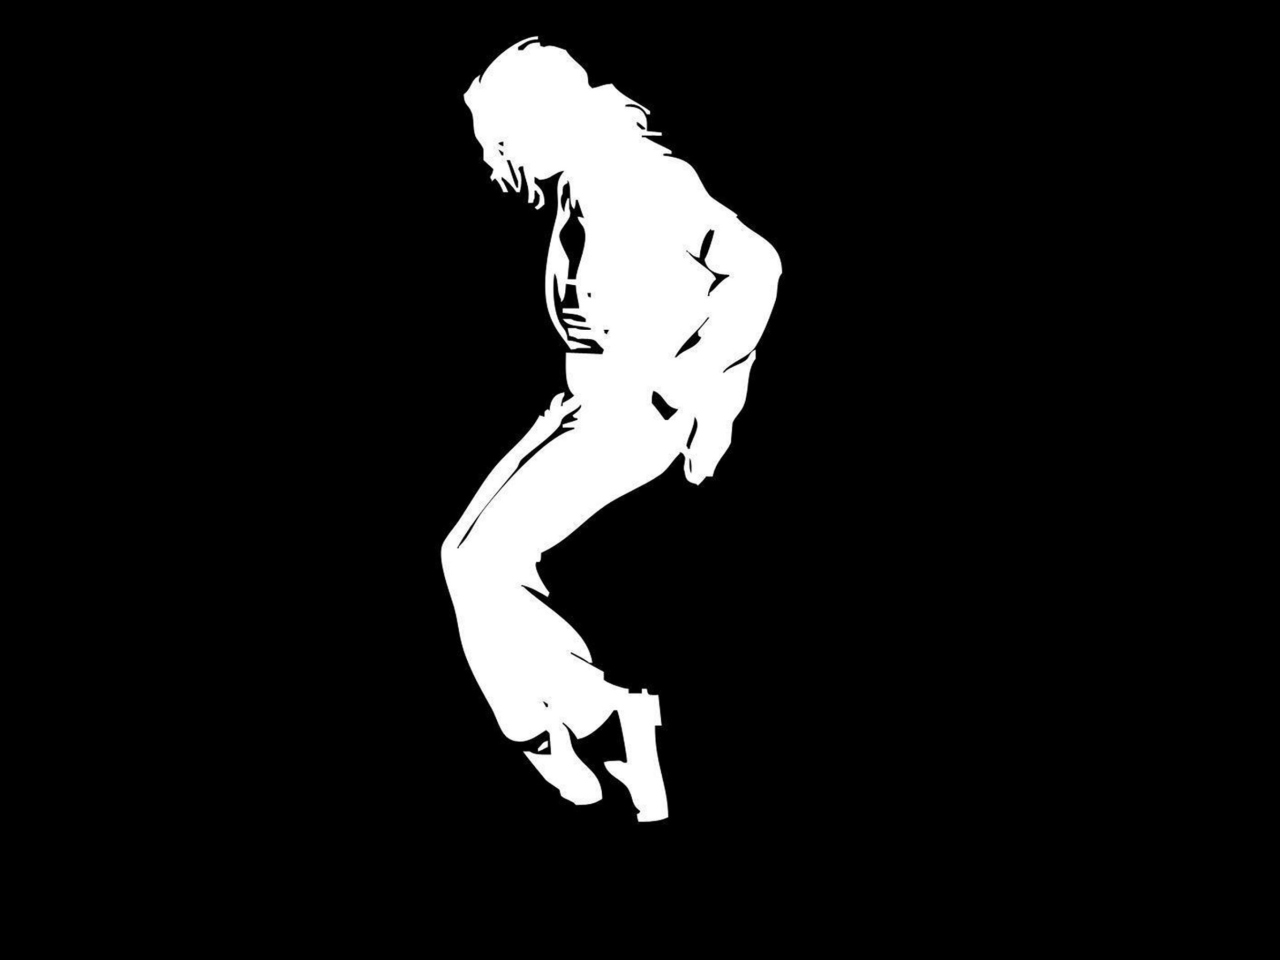 Michael Jackson wallpaper 1280x960